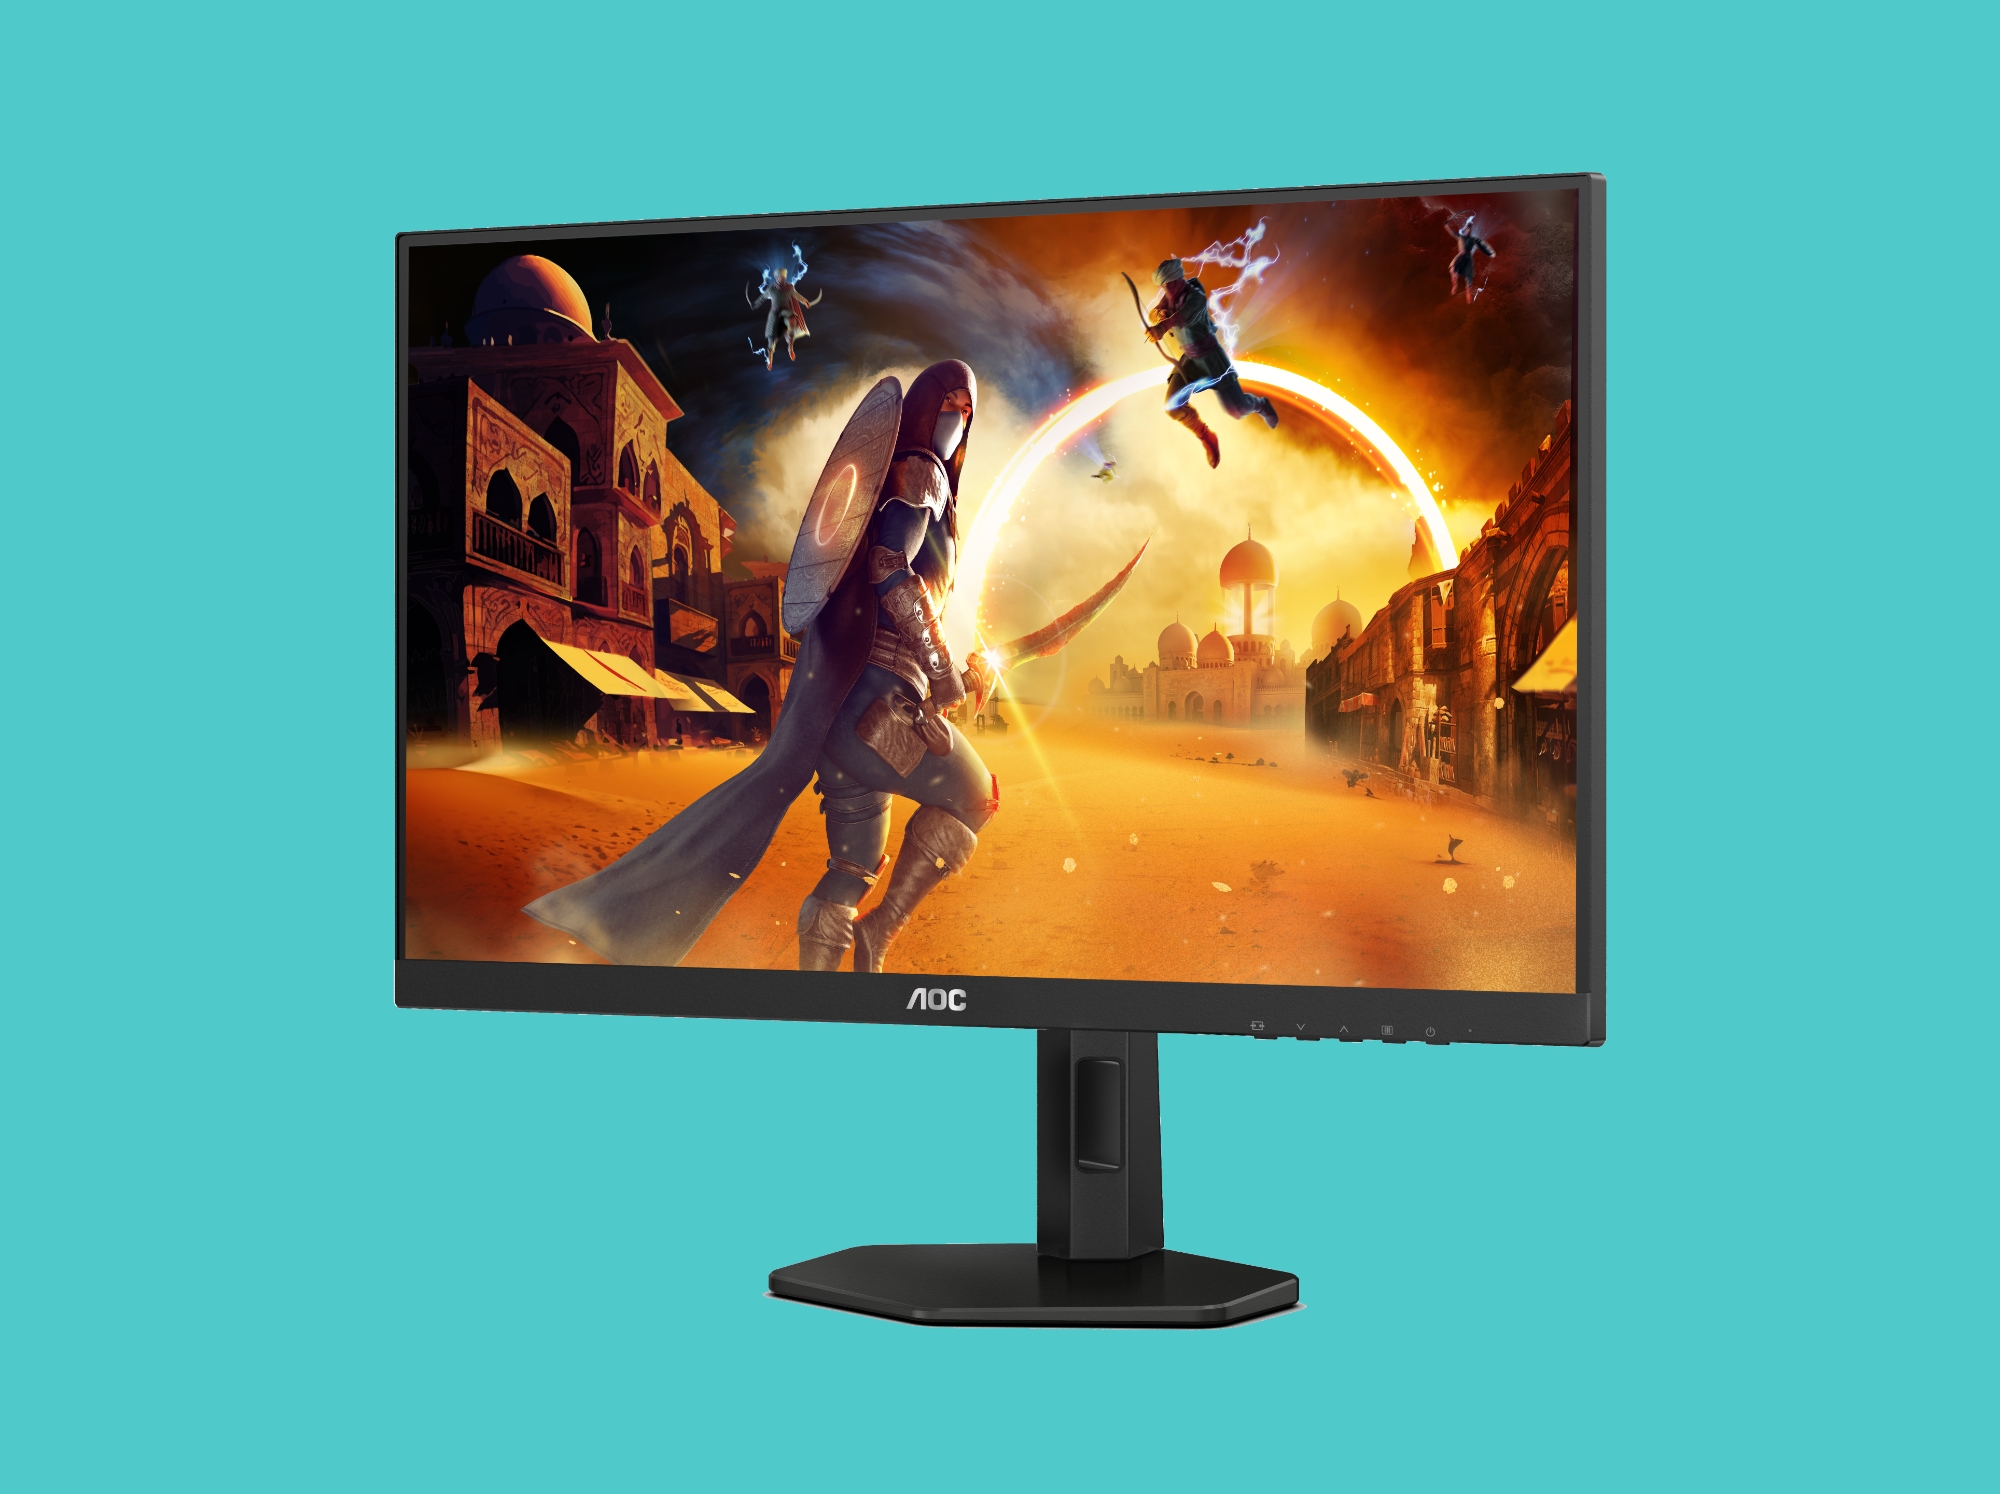 Firma AOC zaprezentowała modele 27G4X i 24G4X: gamę monitorów dla graczy z ekranami IPS Full HD o częstotliwości odświeżania 180 Hz.